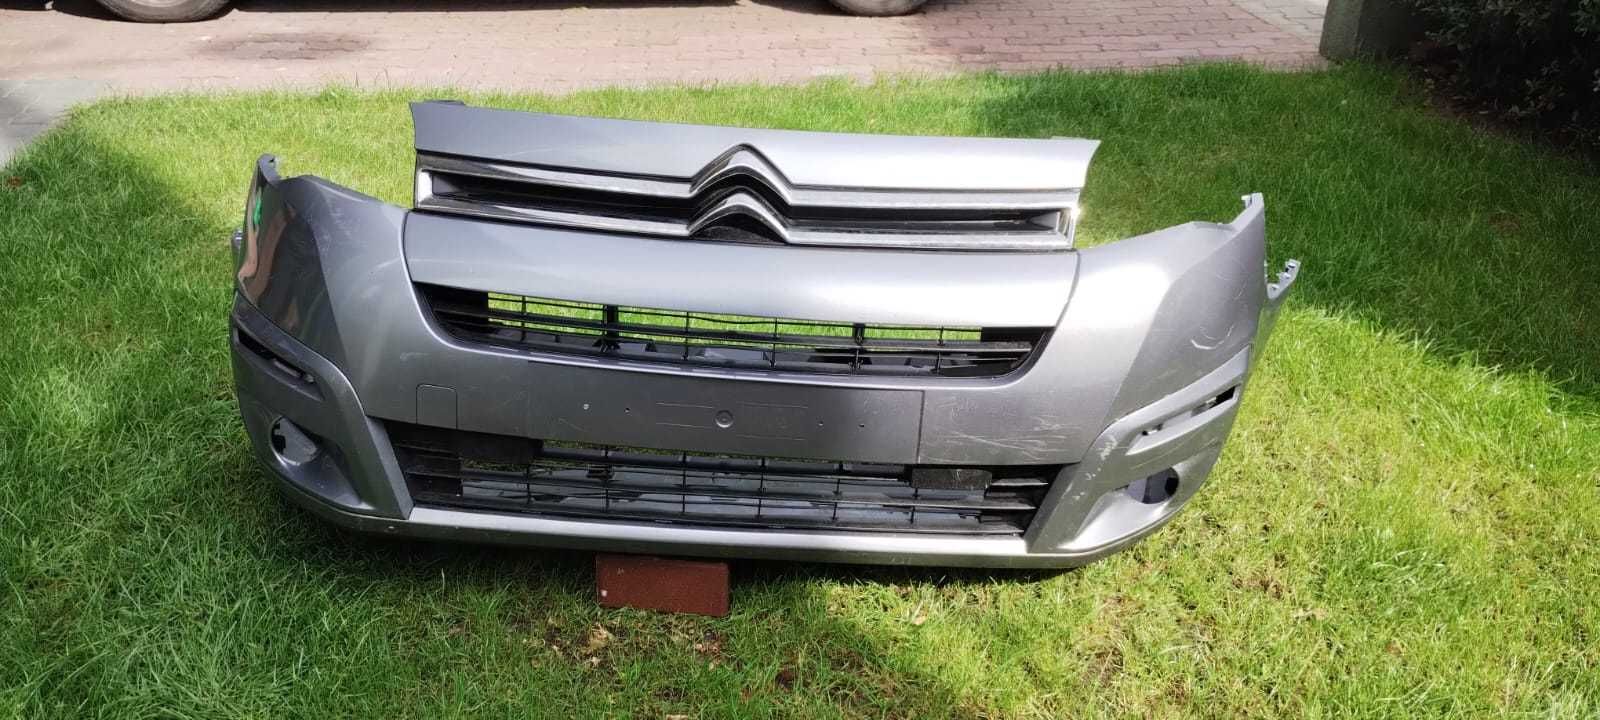 Zderzak Citroën Berlingo 2015 do 2018